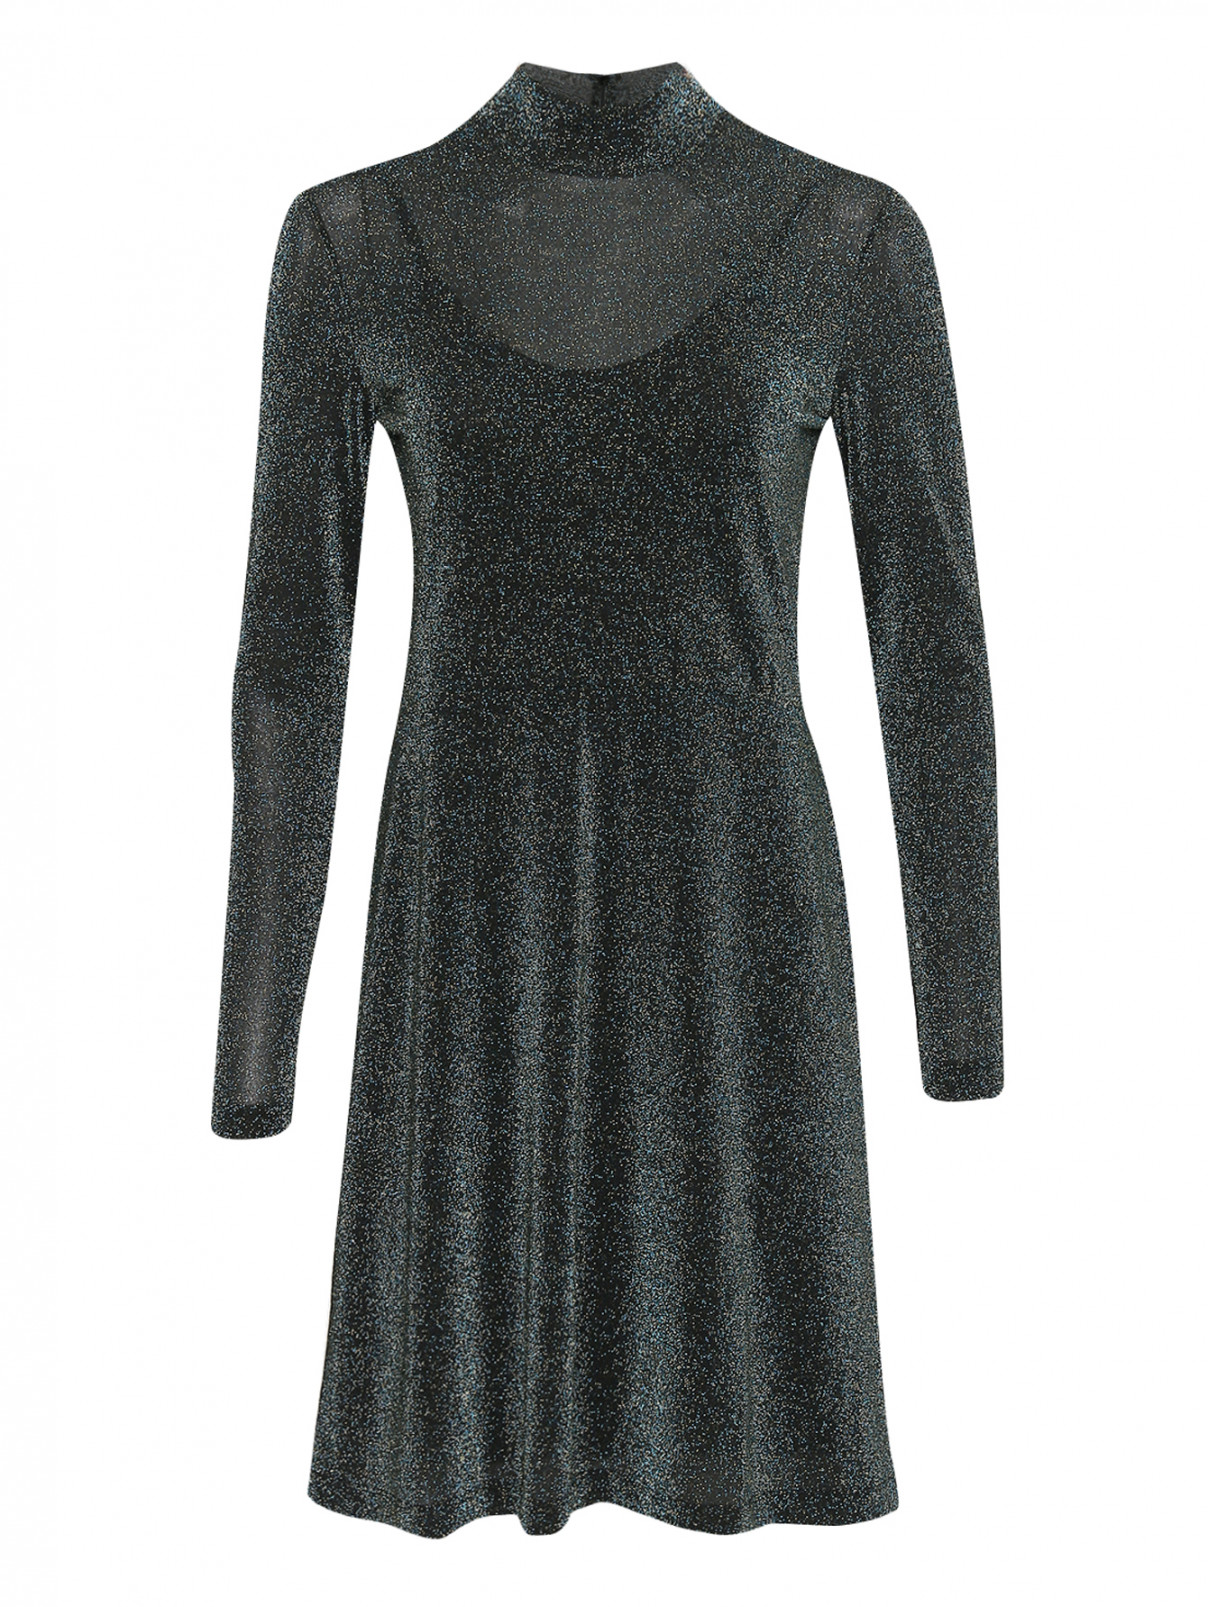 Трикотажное платье с люрексом Paul Smith  –  Общий вид  – Цвет:  Металлик